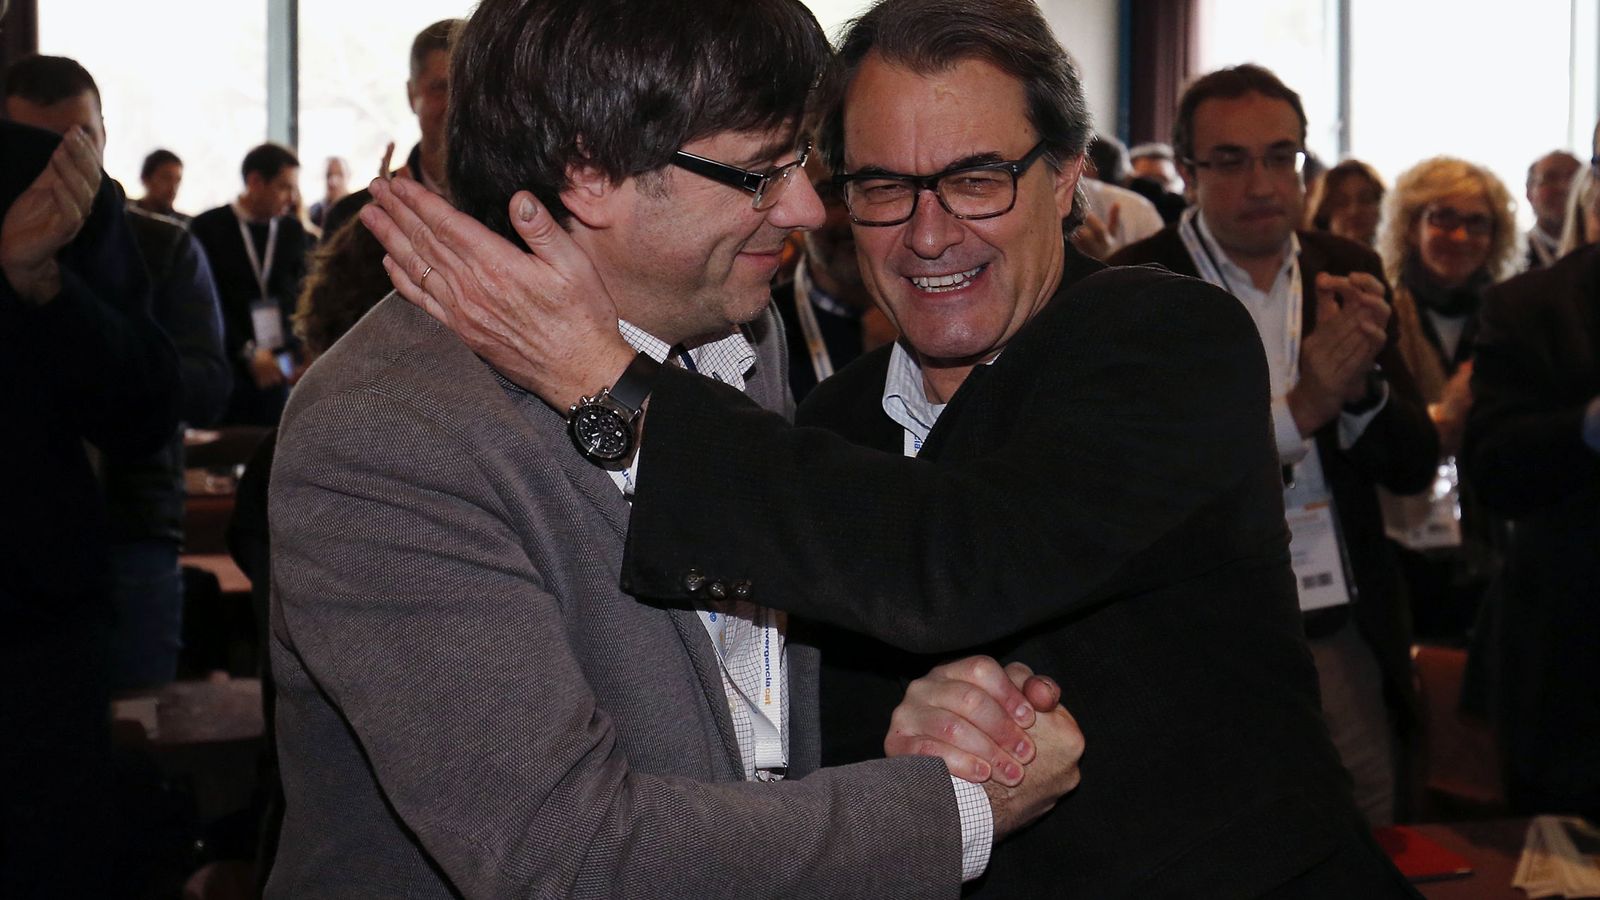 Foto: El presidente de la Generalitat, Carles Puigdemont, saluda al expresidente catalán y líder de Convergència Democràtica de Catalunya, Artur Mas, durante el consell nacional de los convergentes. (EFE)